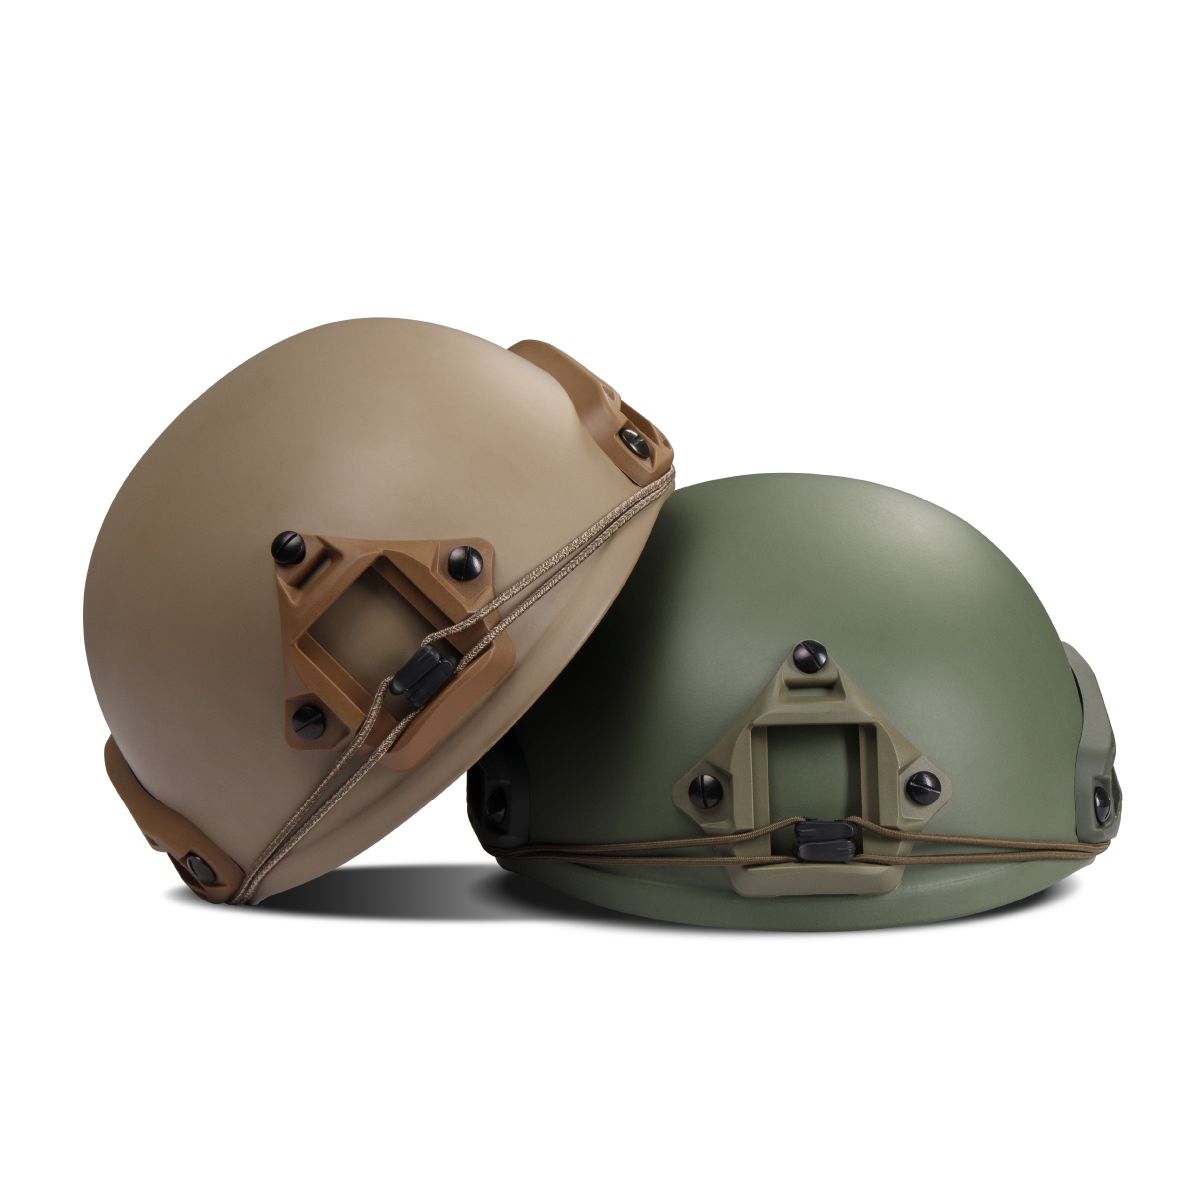 Кевларовый шлем TOR-D (стандарт). Производитель: Украина. Цвет Олива. L 5